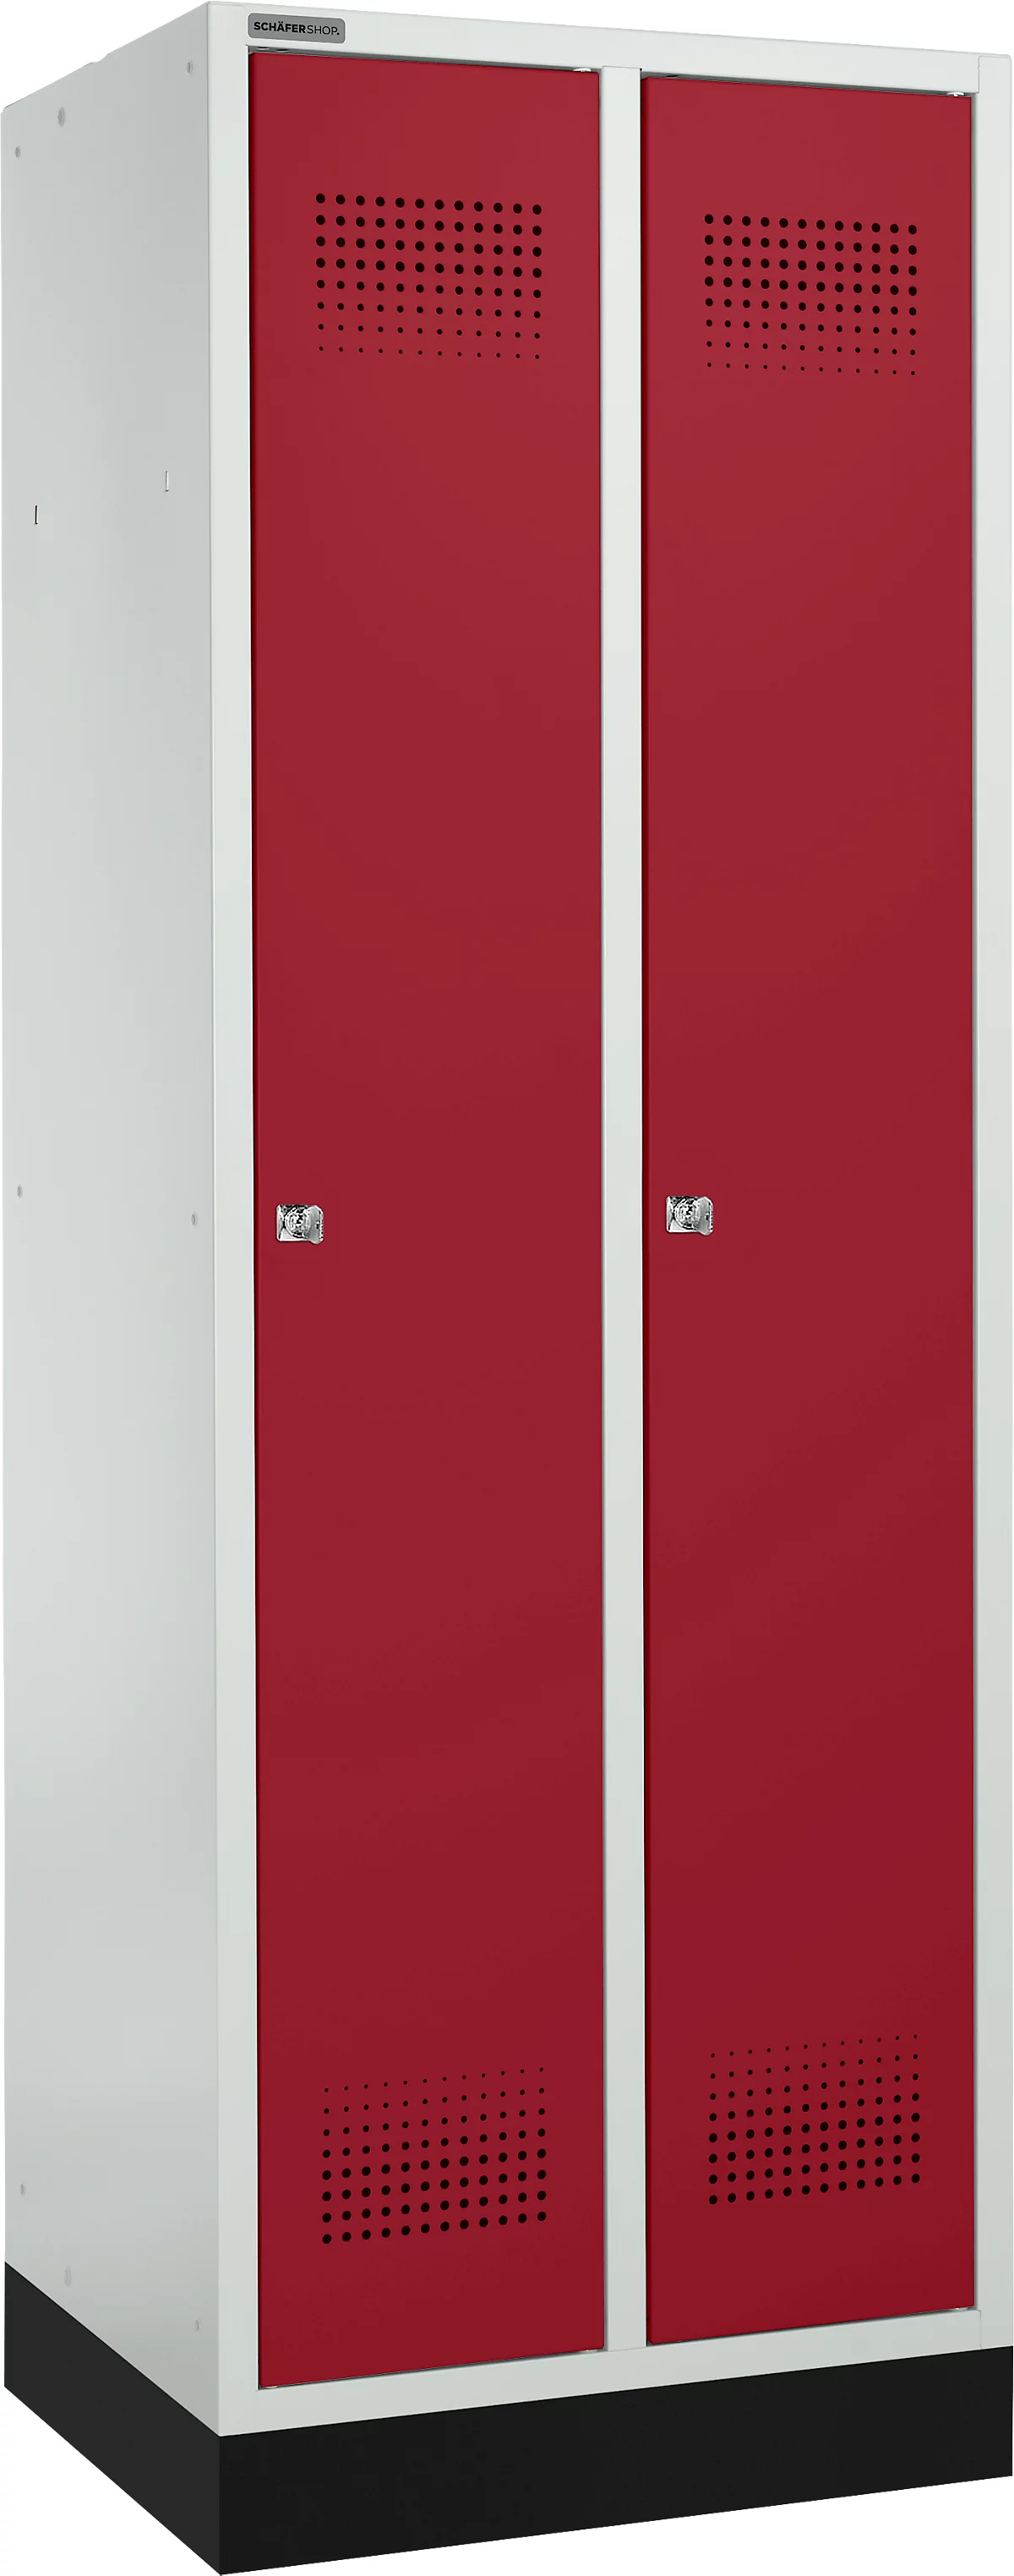 Schäfer Shop Genius Taquilla con zócalo, 2 compartimentos, anchura compartimento 300 mm, cerradura de cilindro, gris luminoso/rojo rubí